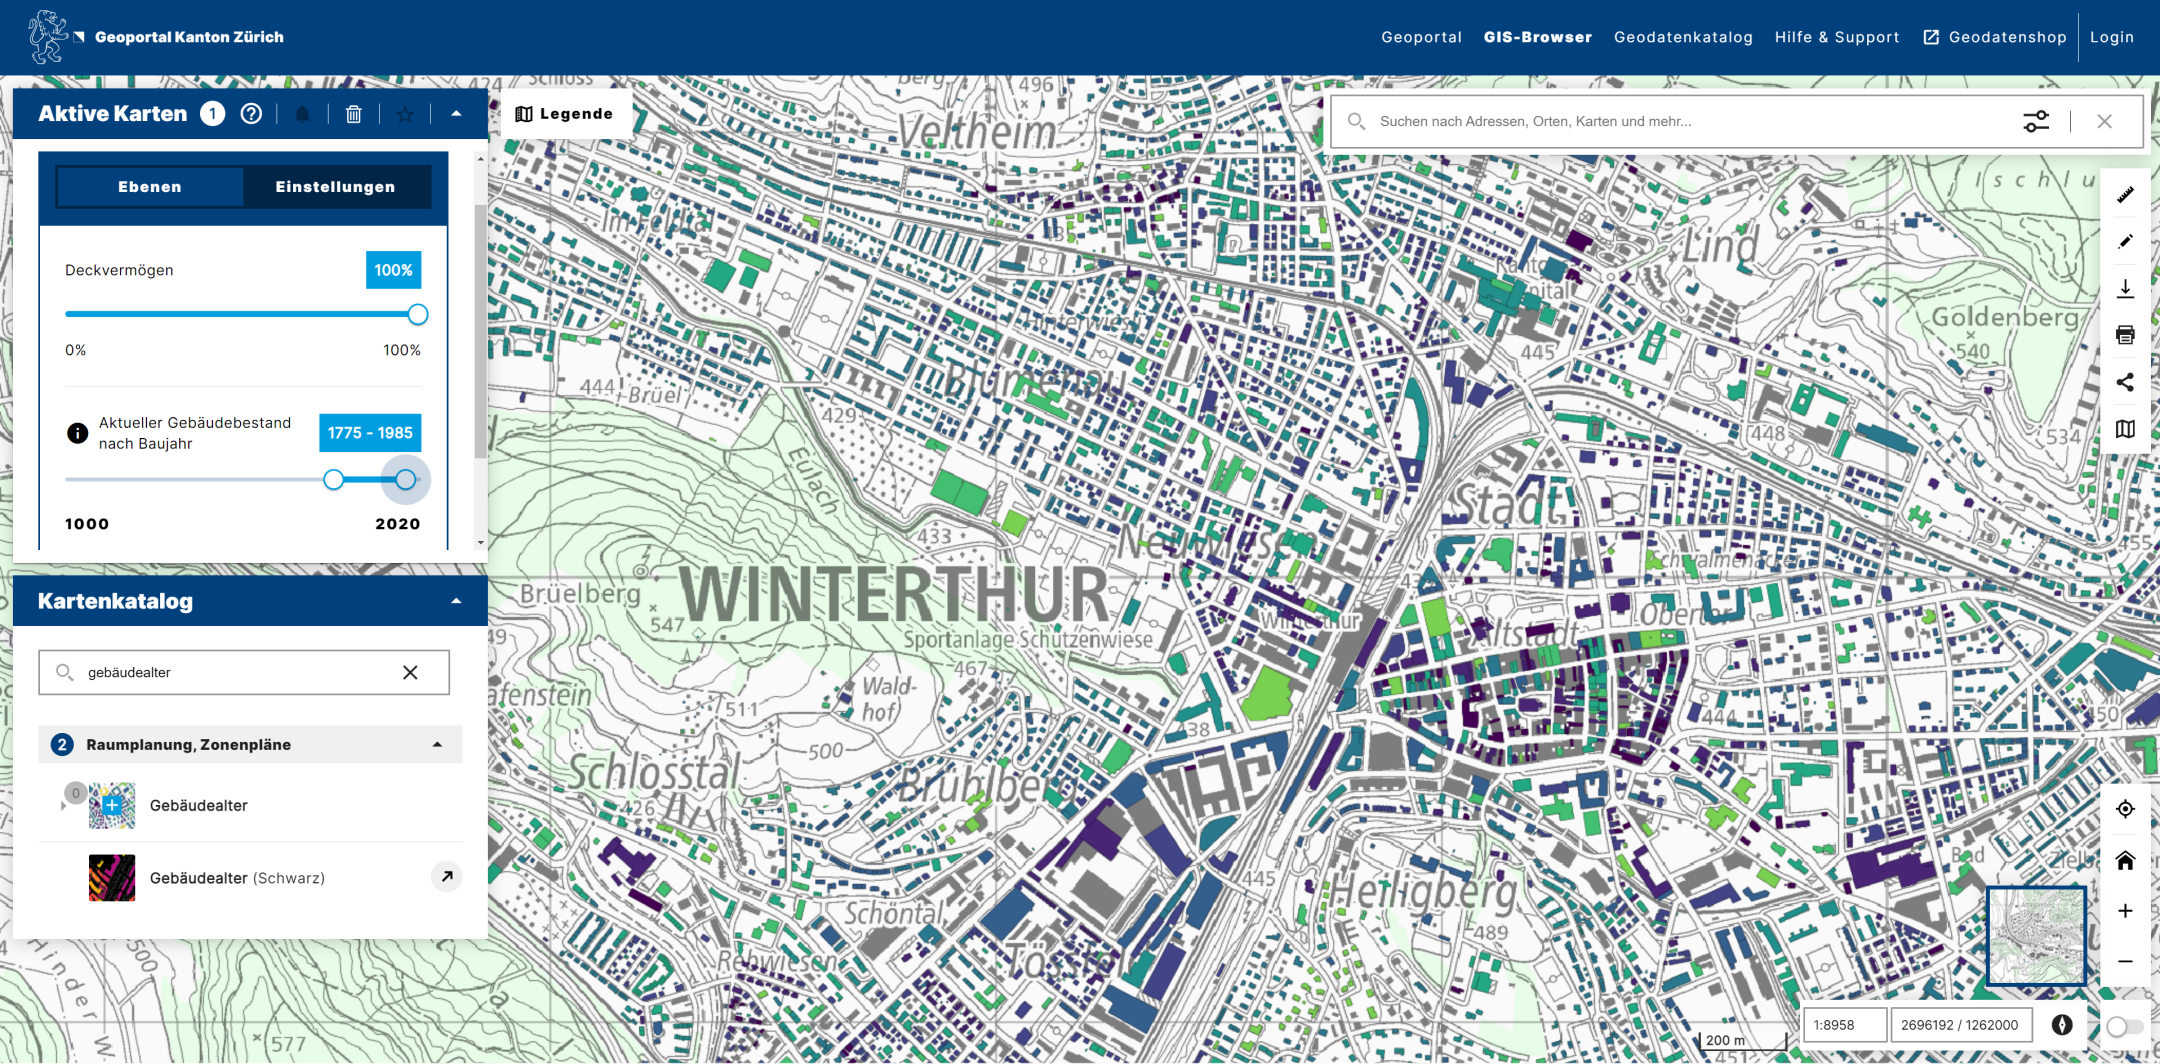 Detaillierter Aus-schnitt der Stadt Winterthur im neuen GIS-Browser